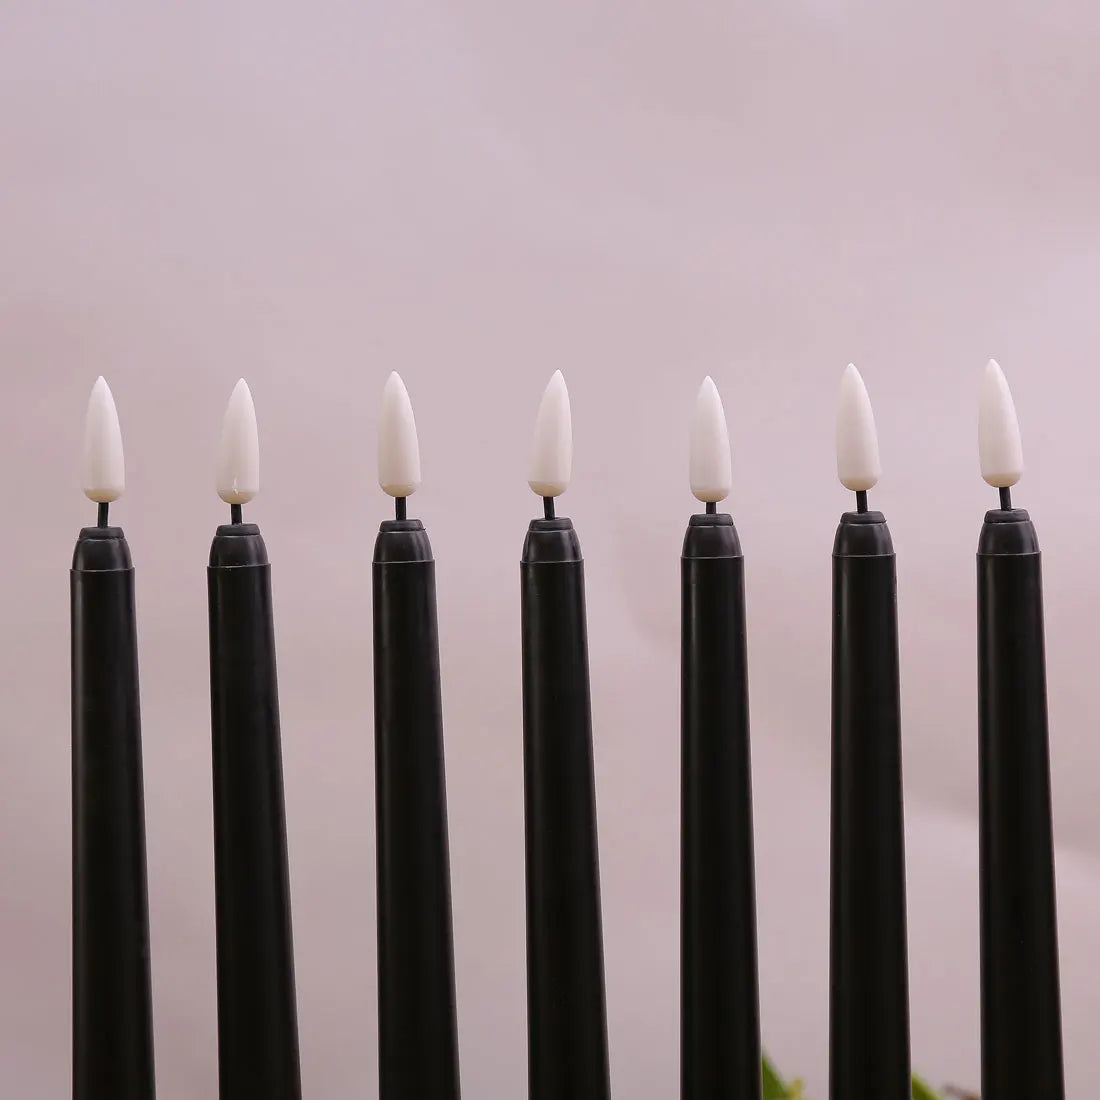 3 ou 4 peças 11 polegadas Halloween Blackless LED diminua velas com luz amarela/quente, bateria de plástico com velas de LEDs falsas